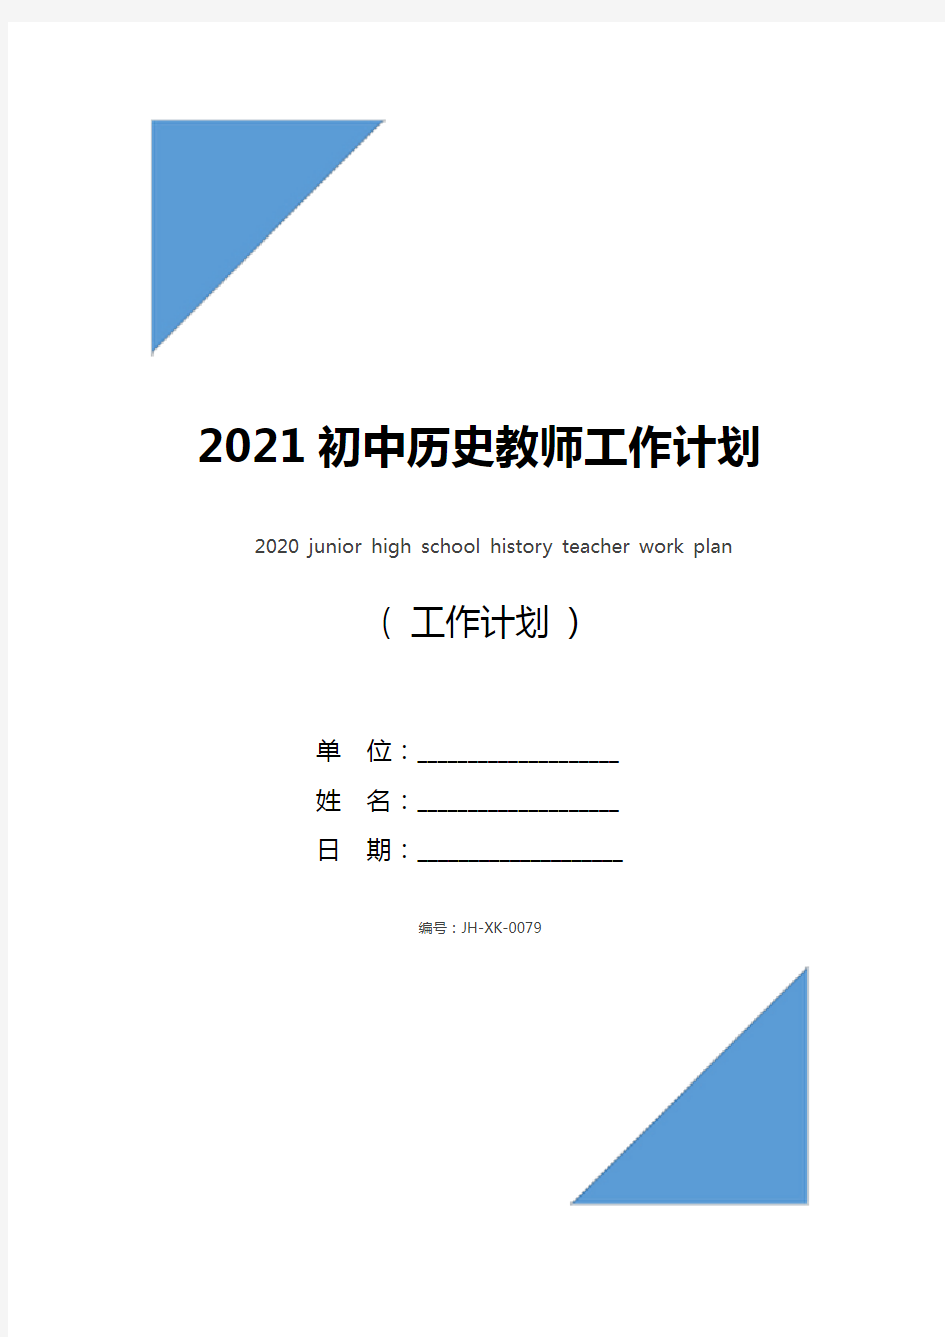 2021初中历史教师工作计划(最新版)